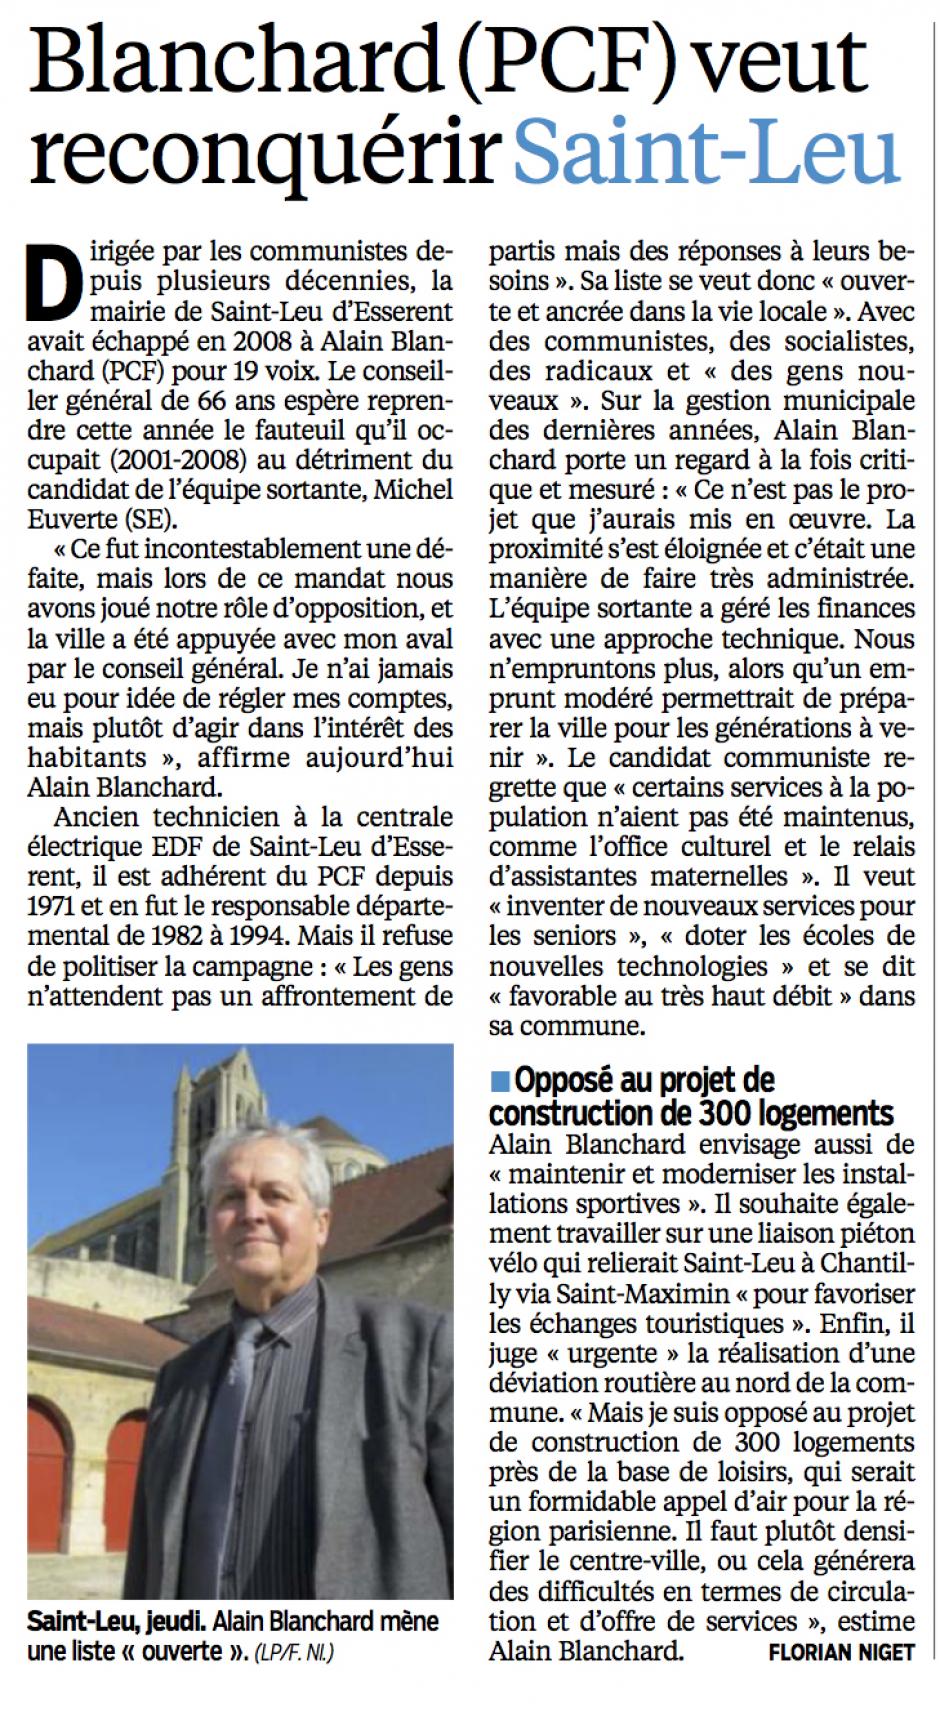 20140308-CP-Saint-Leu-d'Esserent-M2014-Alain Blanchard (PCF) veut reconquérir la ville